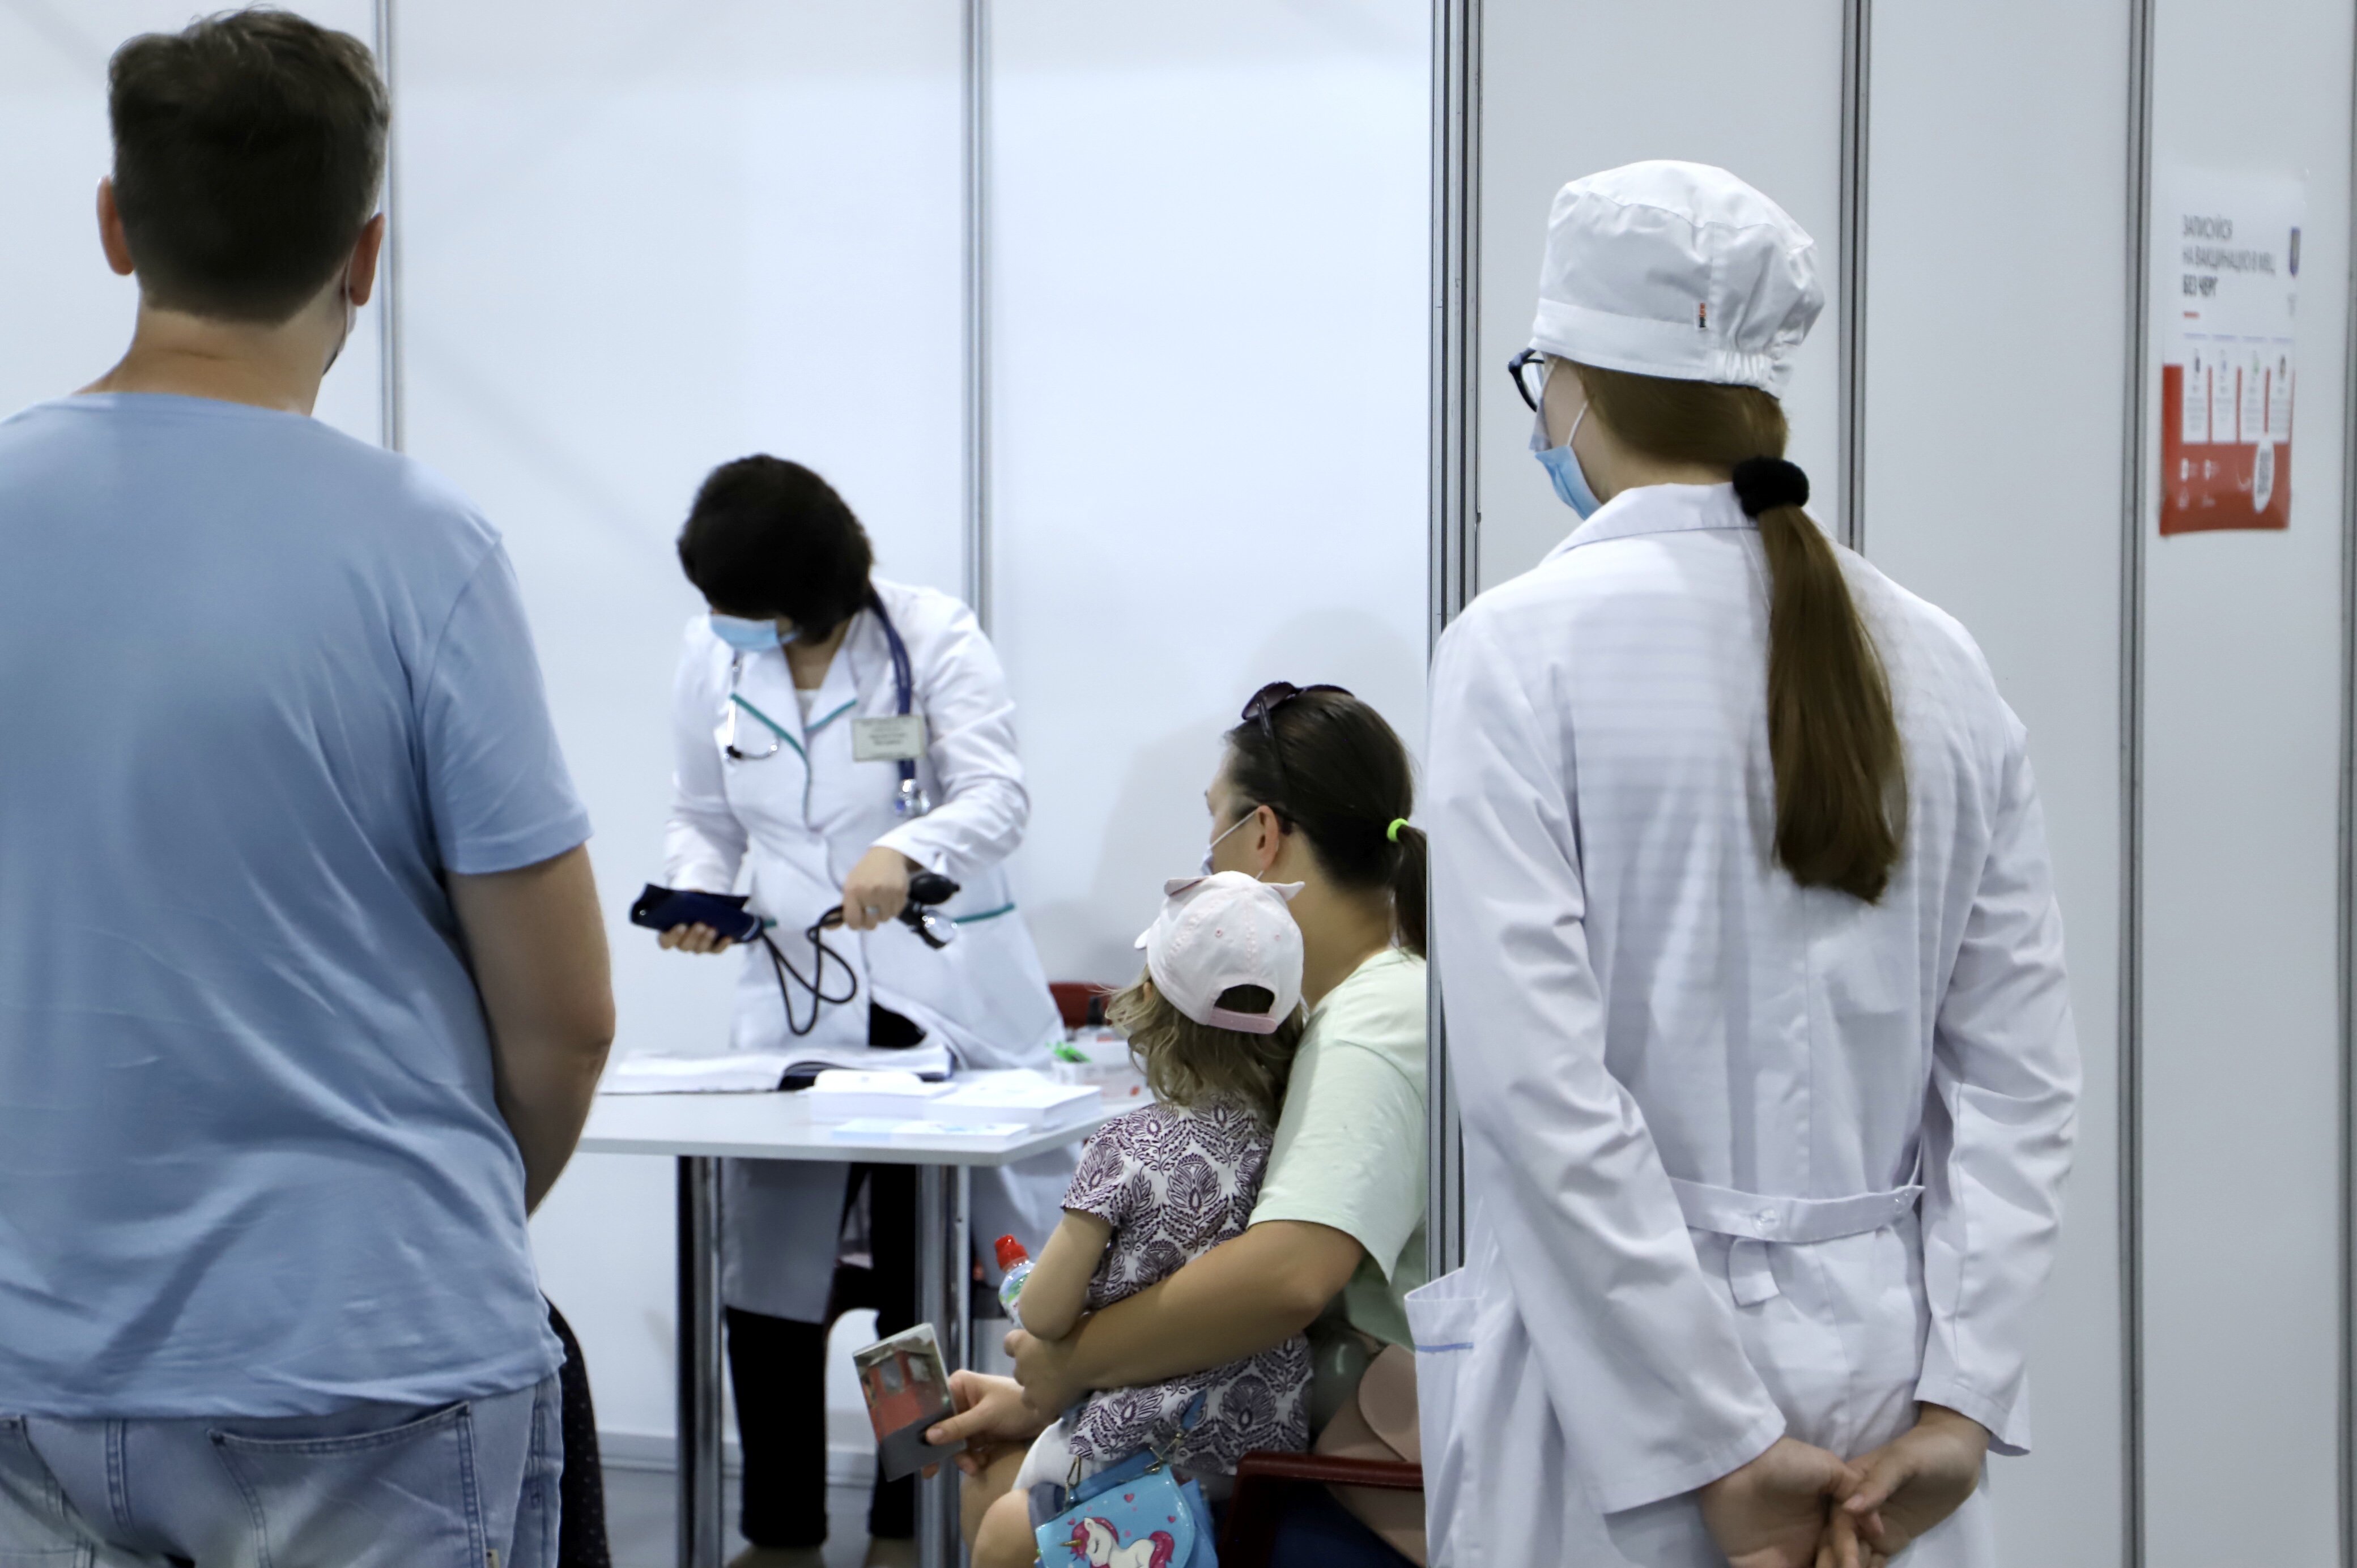 Центр вакцинации на столичной Левобережной с 5 июля будет работать ежедневно